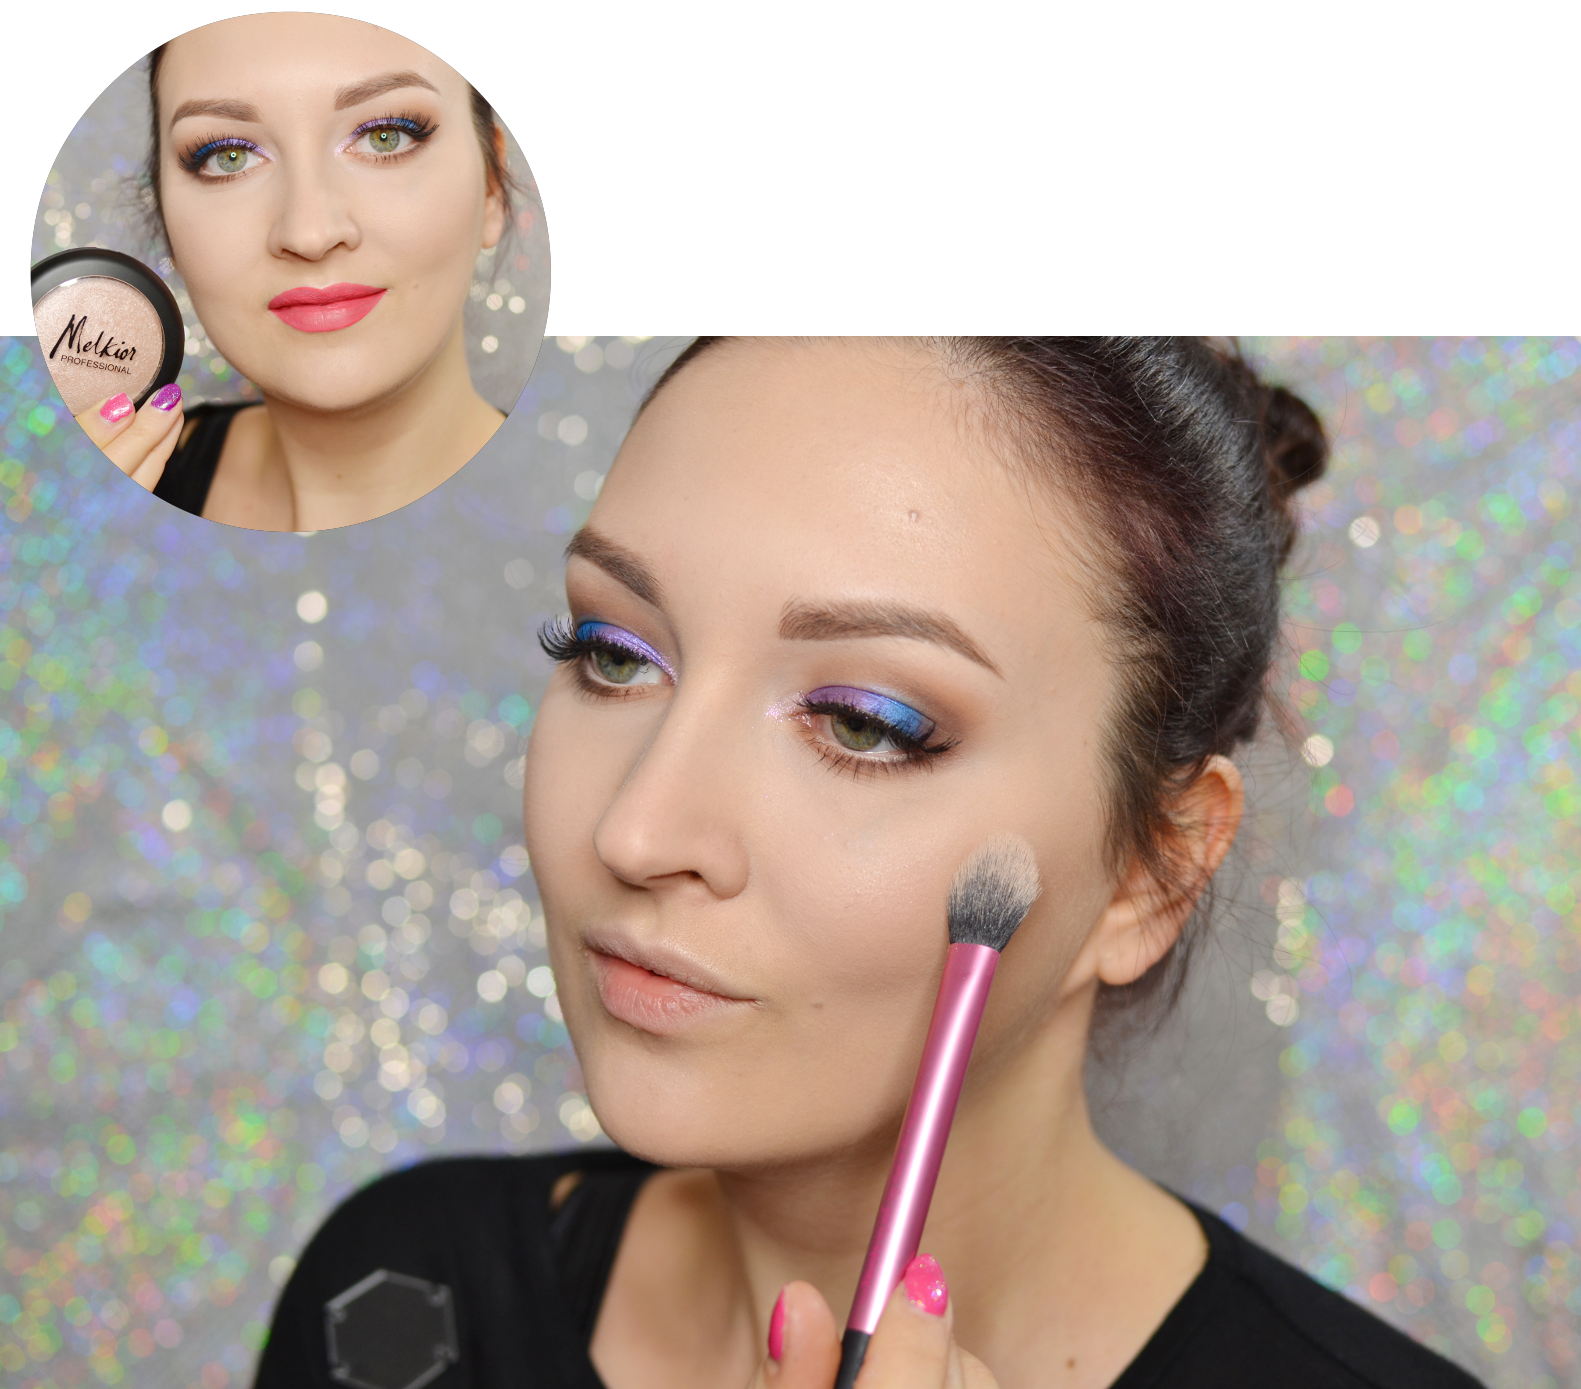 Kylie jenner makeup tutorial, Jenner makeup, Kylie makeup